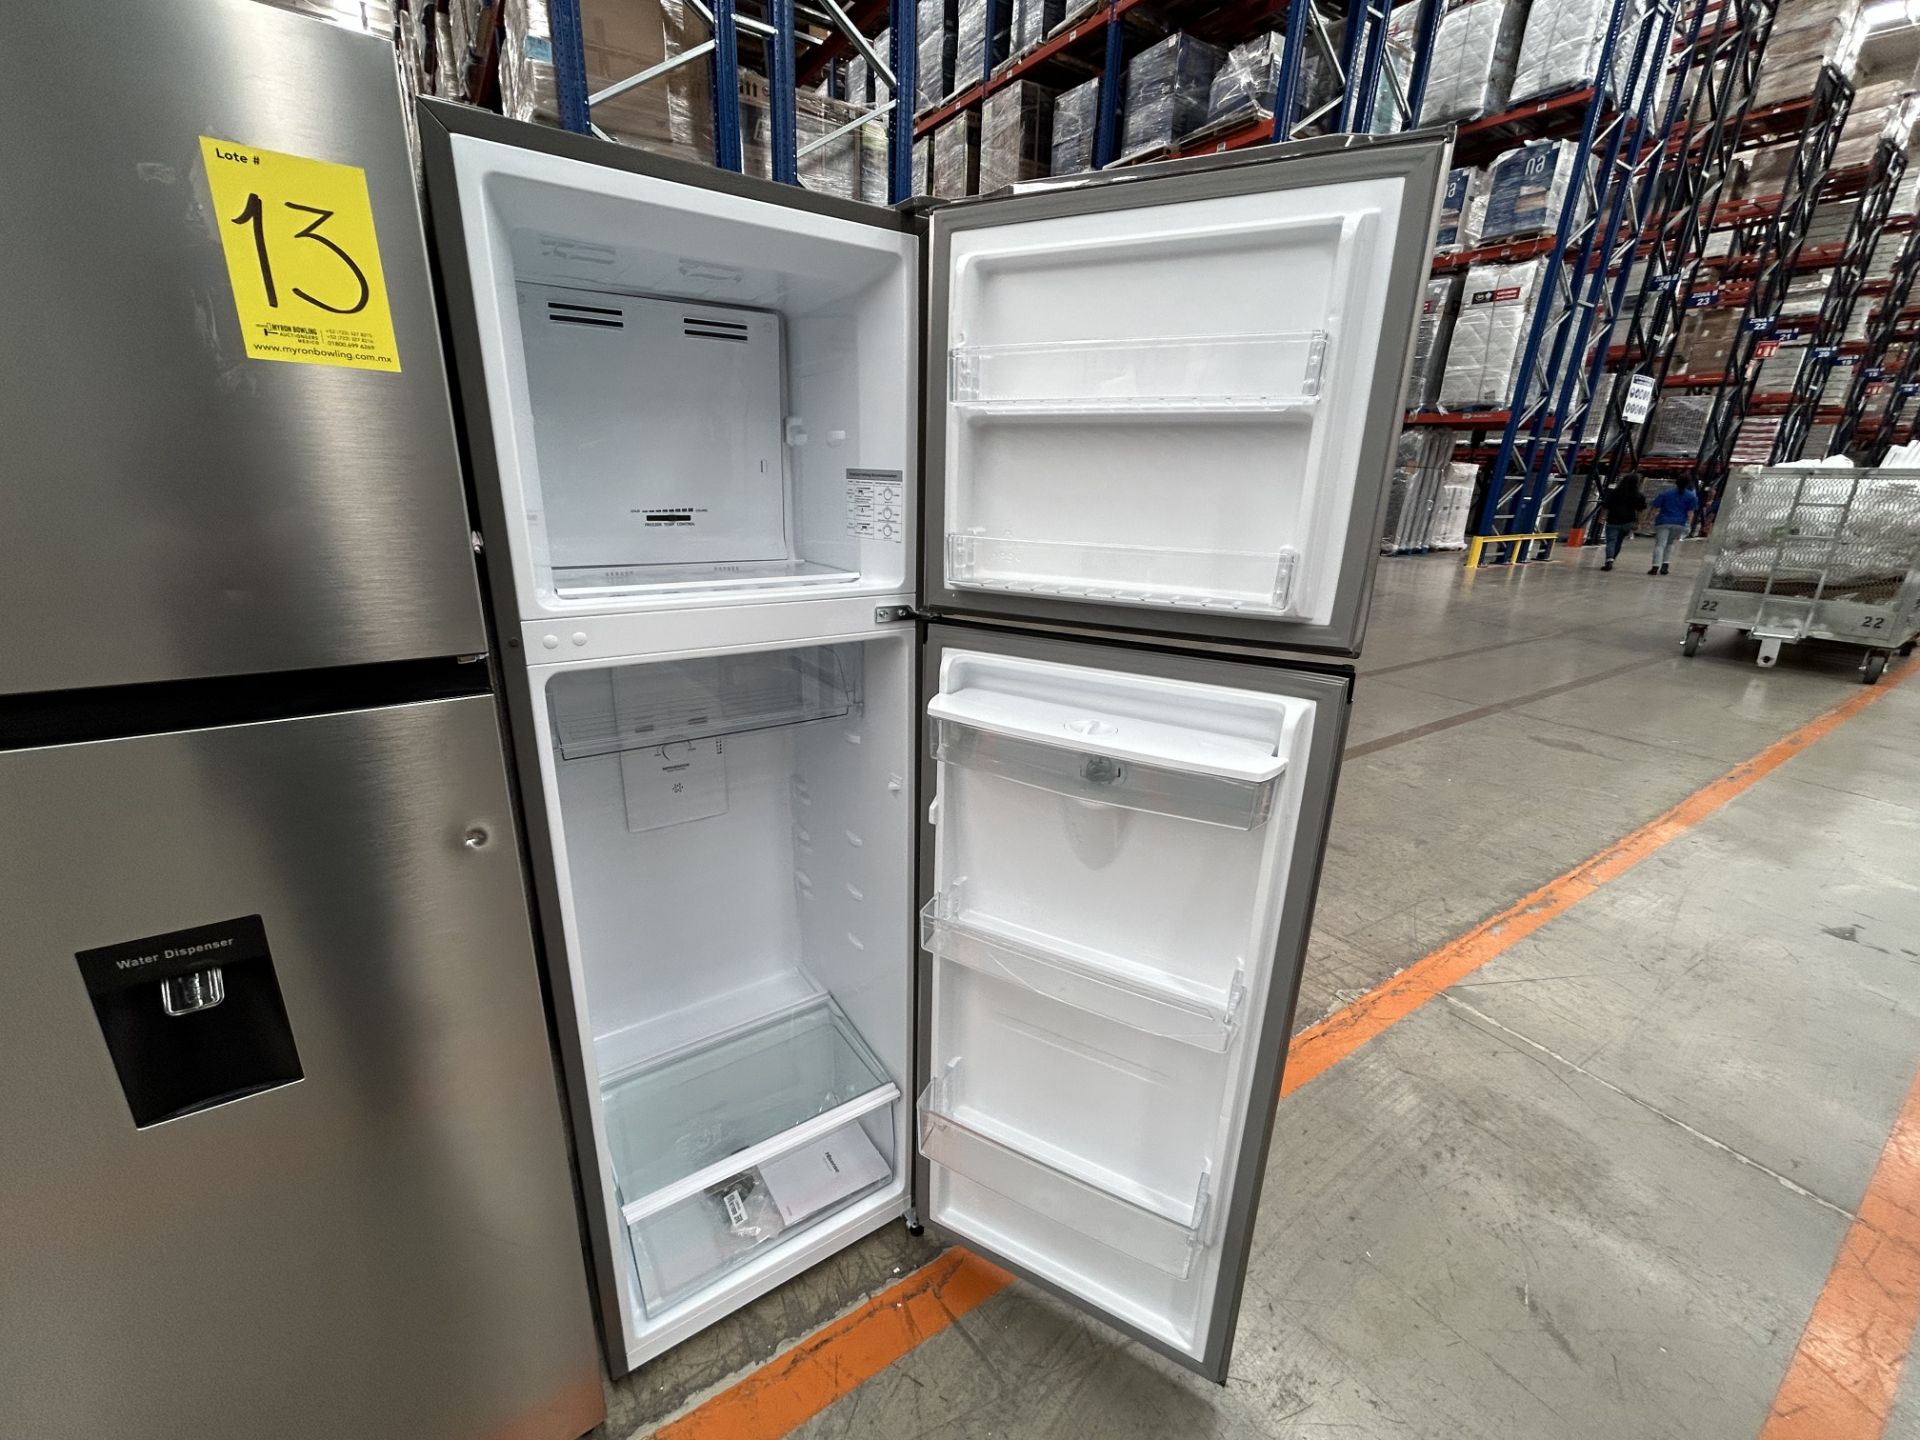 Lote de 2 refrigeradores contiene: 1 refrigerador con dispensador de agua Marca HISENSE, Modelo RT9 - Image 5 of 7